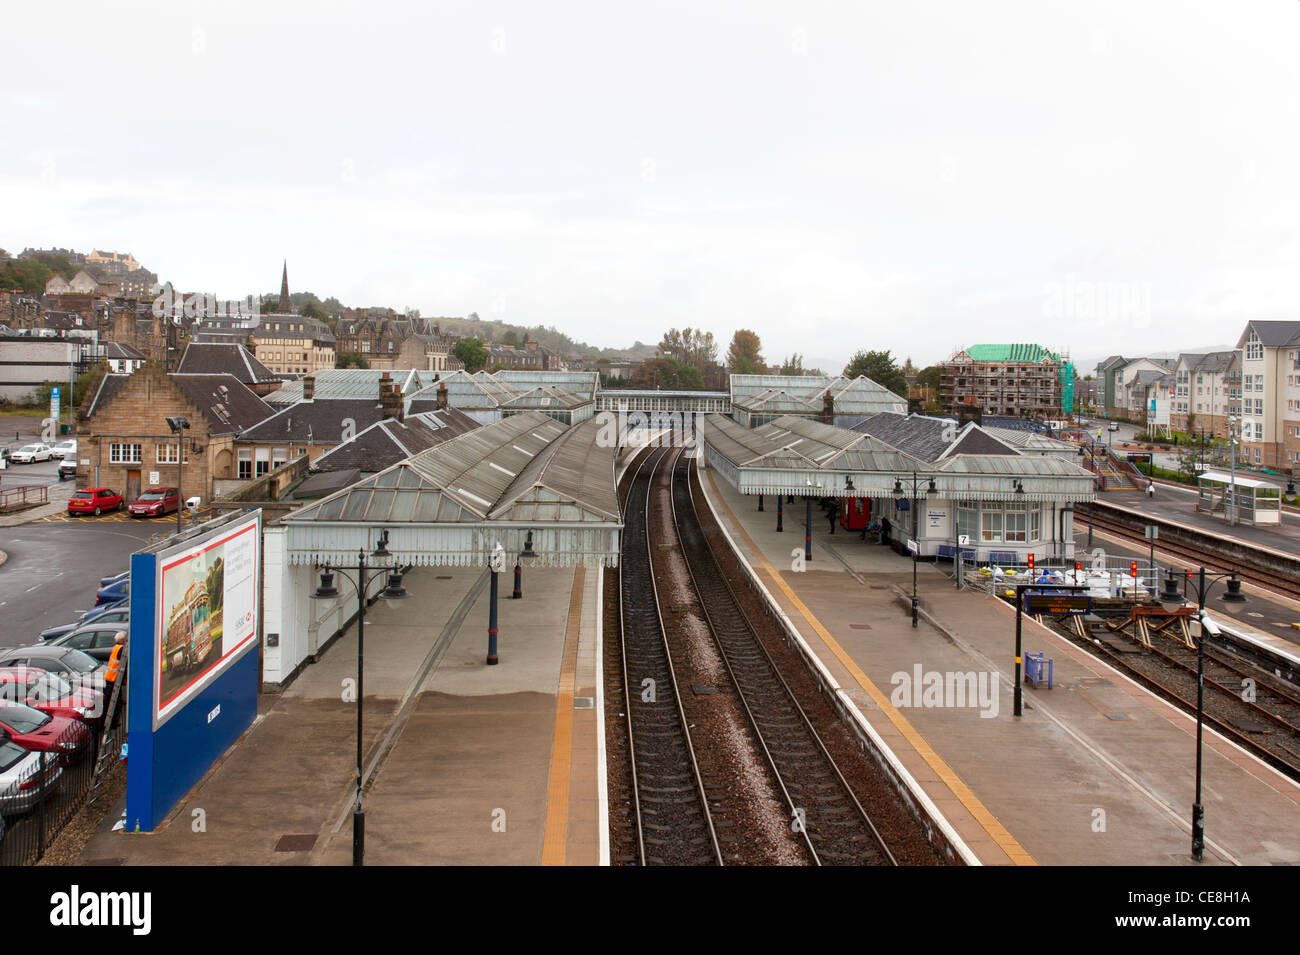 Bahnhof von Stirling, Schottland Scotrail Zug von oben schaut auf Spuren in station Stockfoto